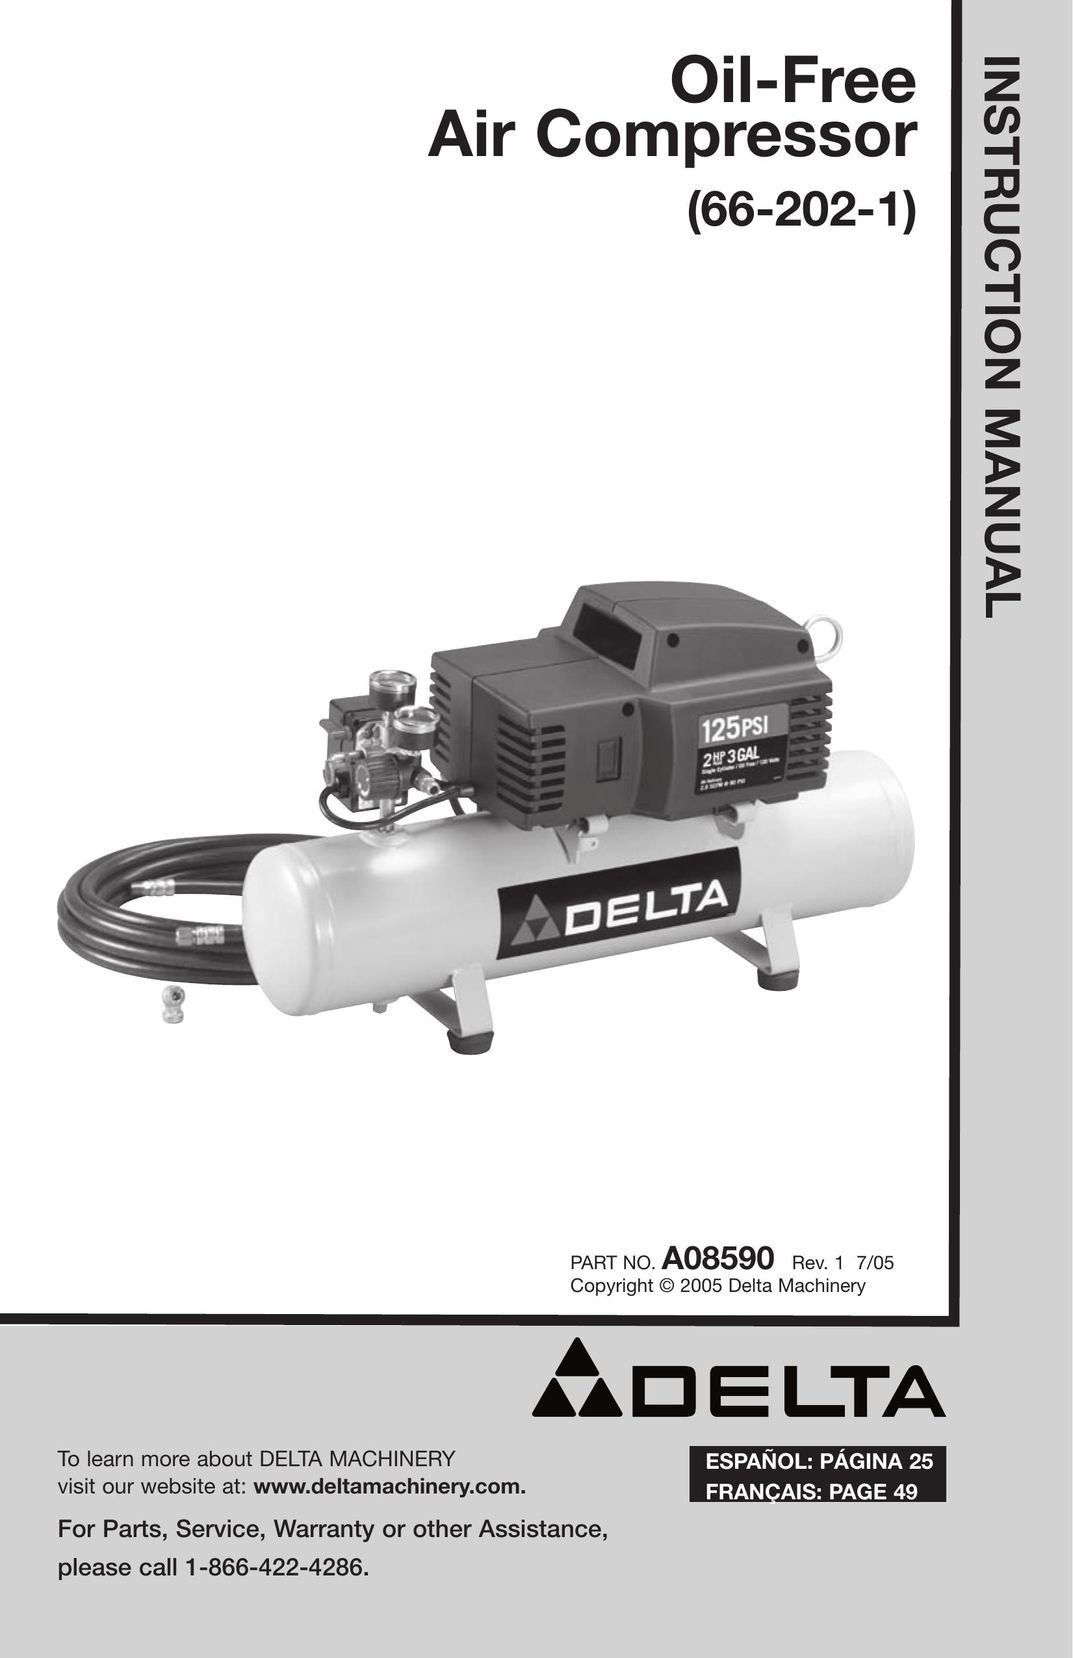 Delta 66-202-1 Air Compressor User Manual